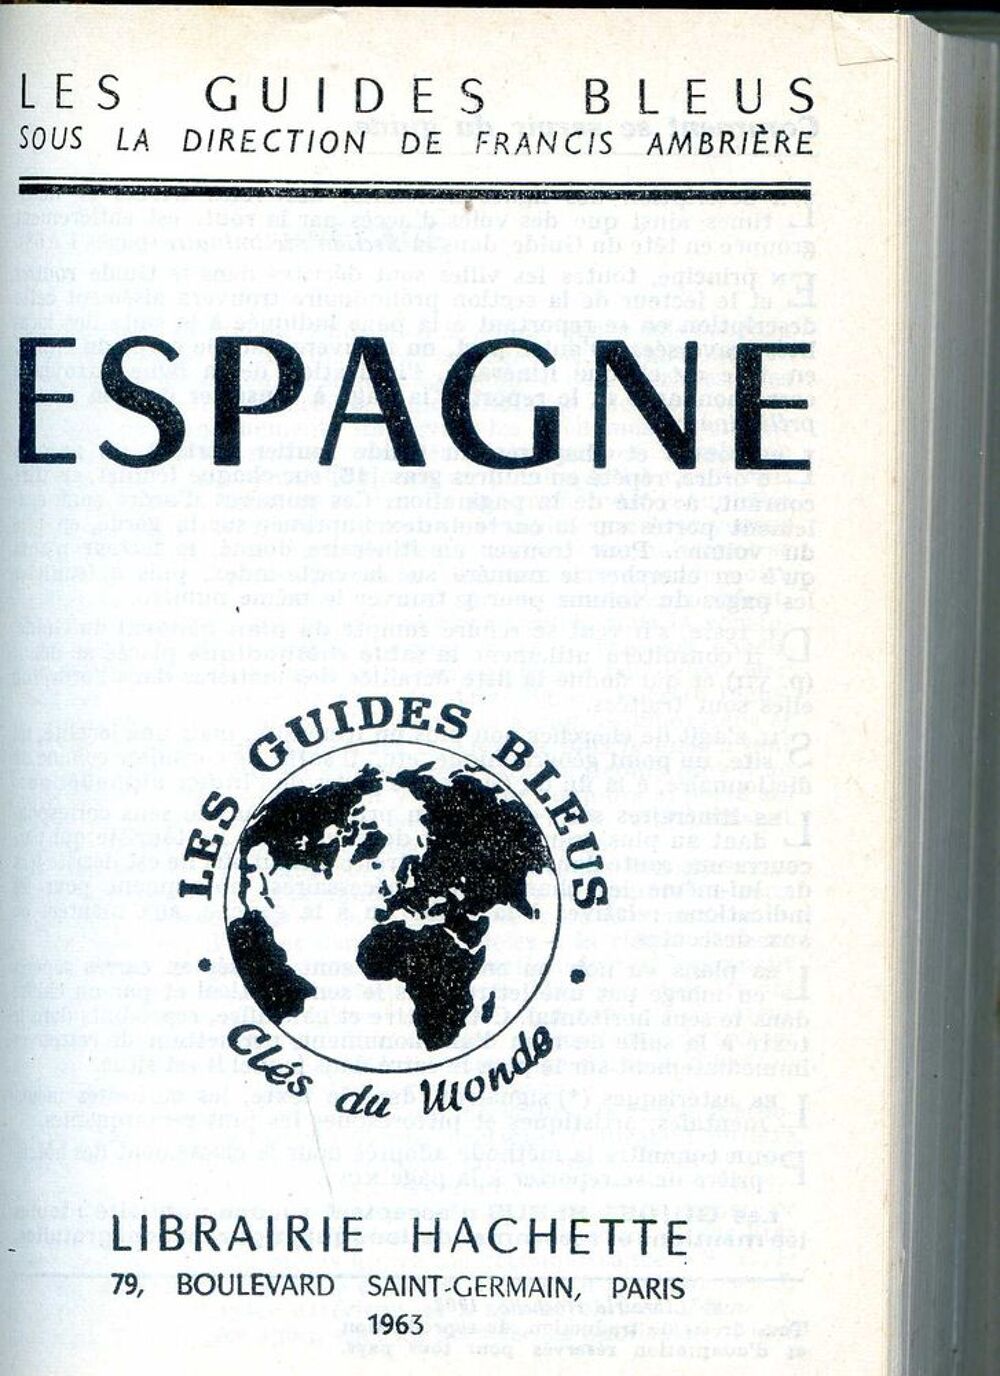 ESPAGNE - Les guides bleus - 1963,
Livres et BD